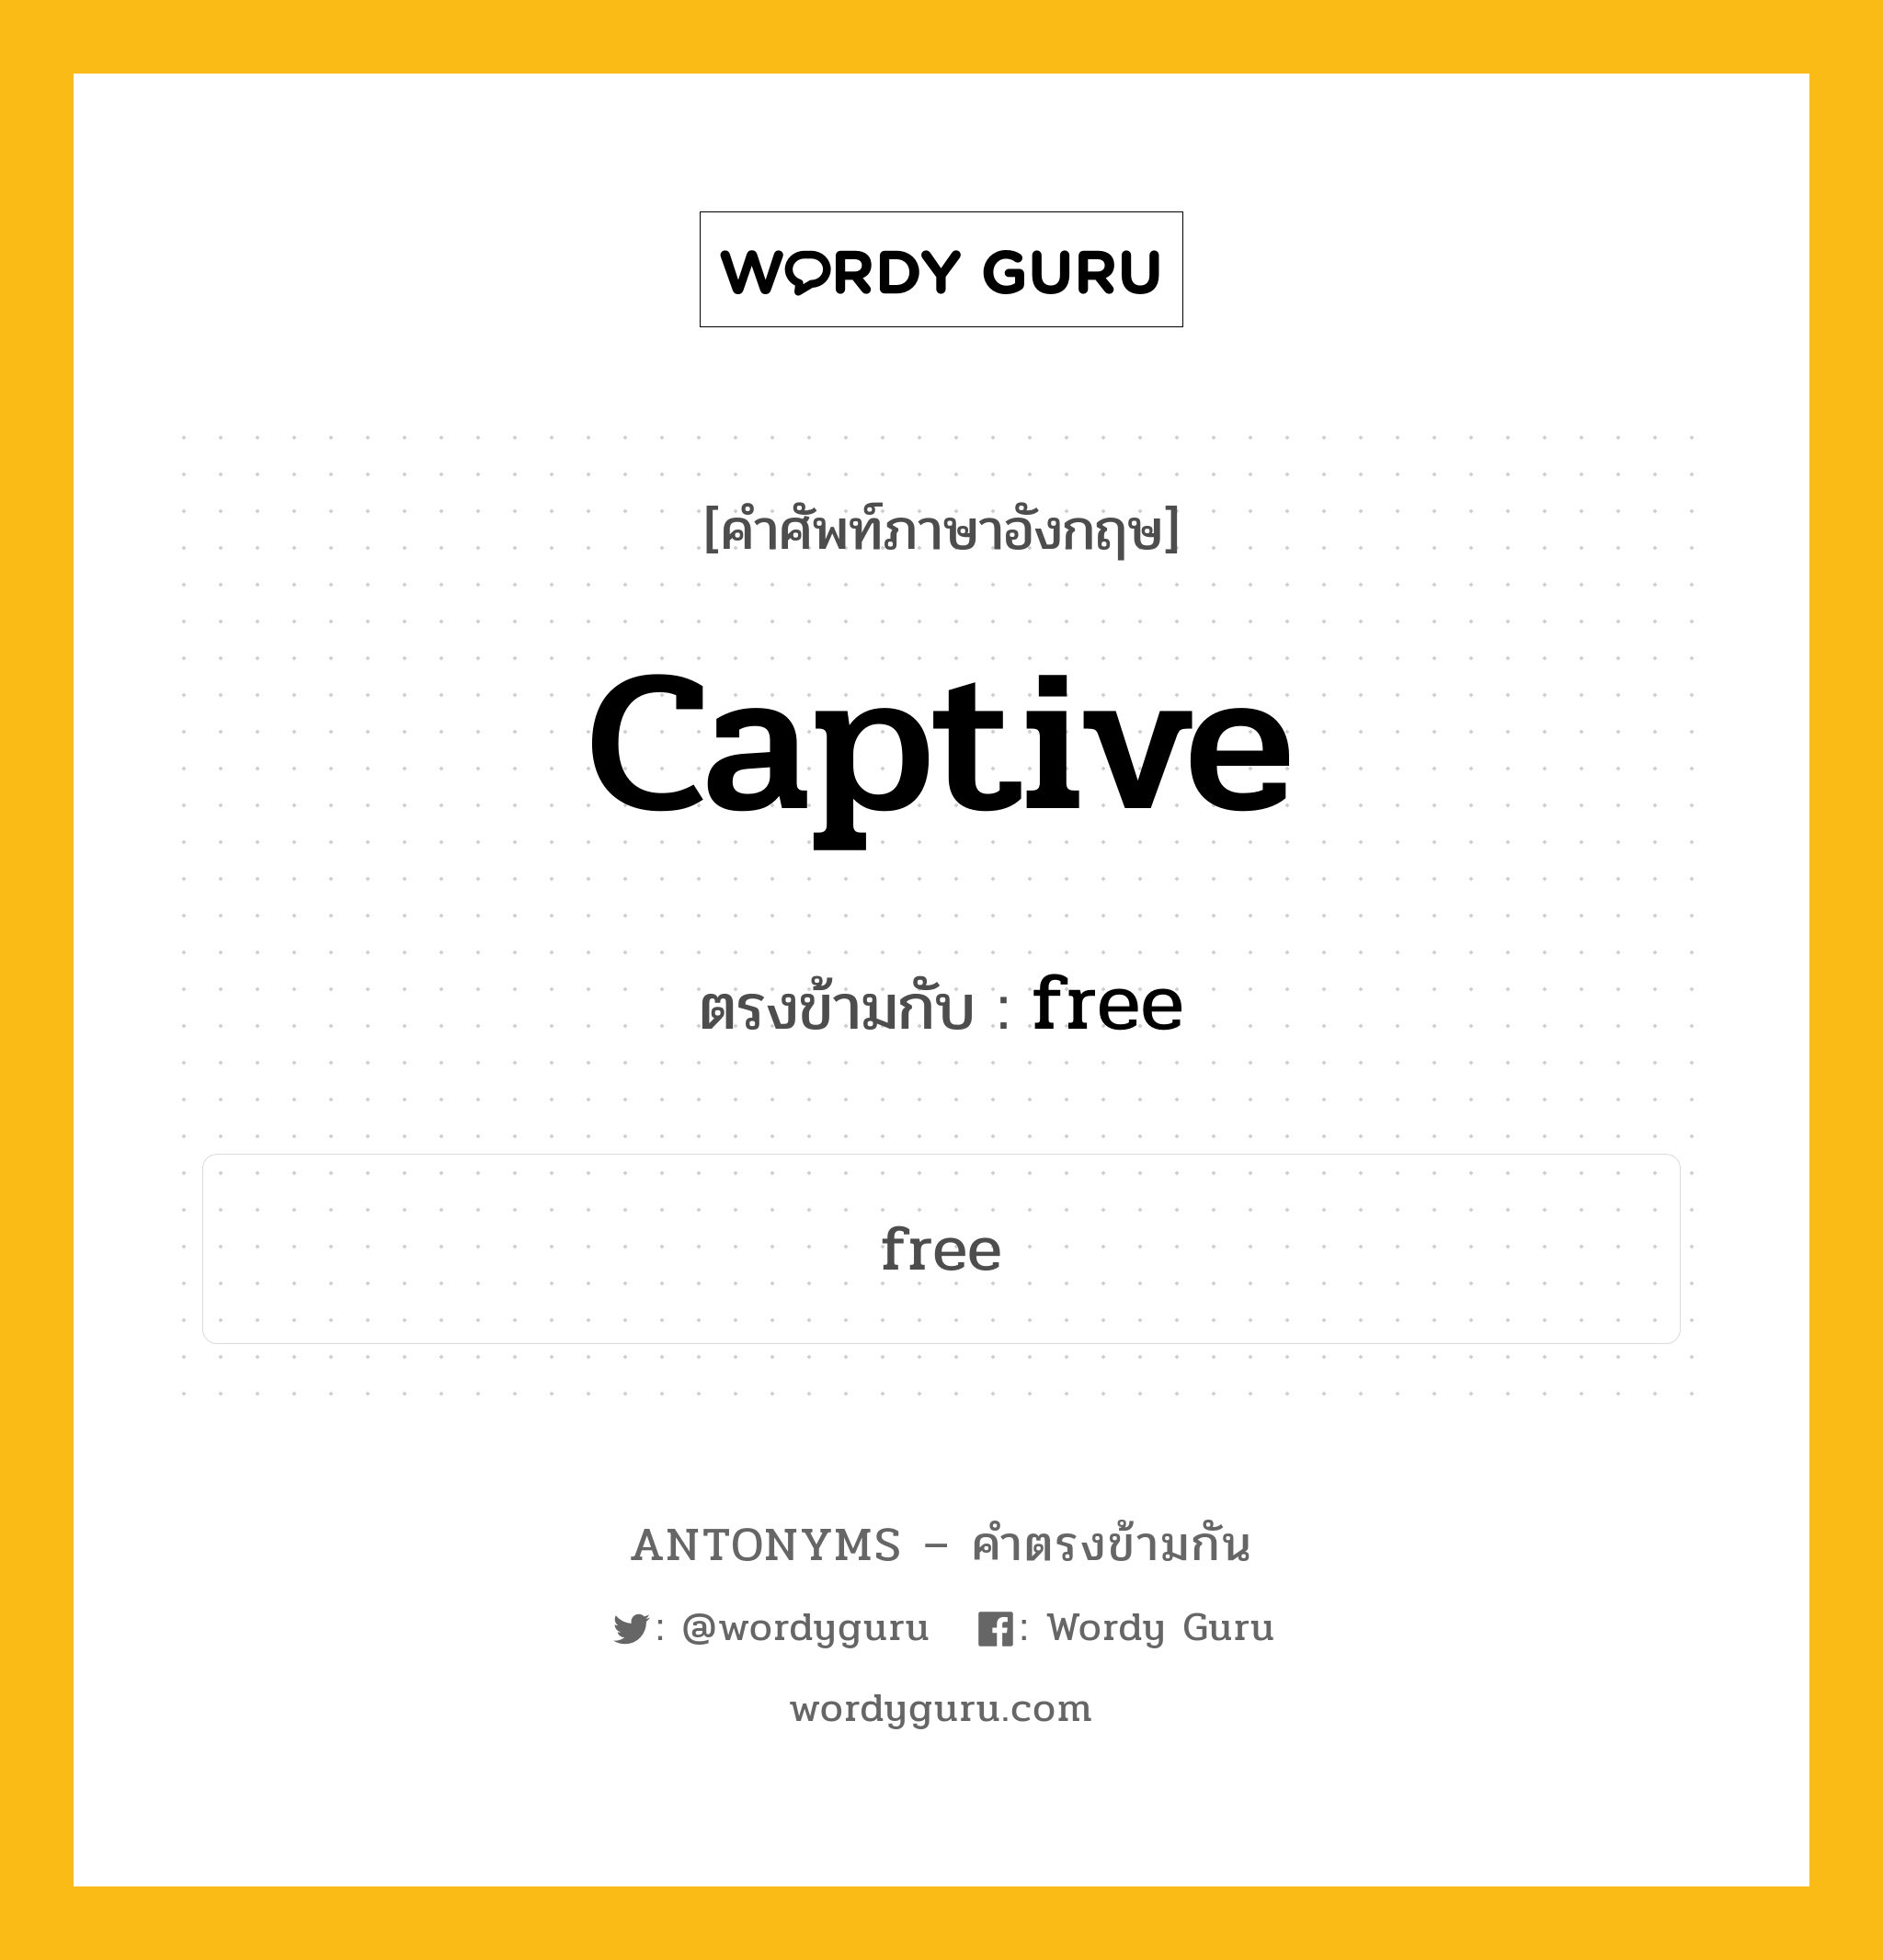 captive เป็นคำตรงข้ามกับคำไหนบ้าง?, คำศัพท์ภาษาอังกฤษ captive ตรงข้ามกับ free หมวด free